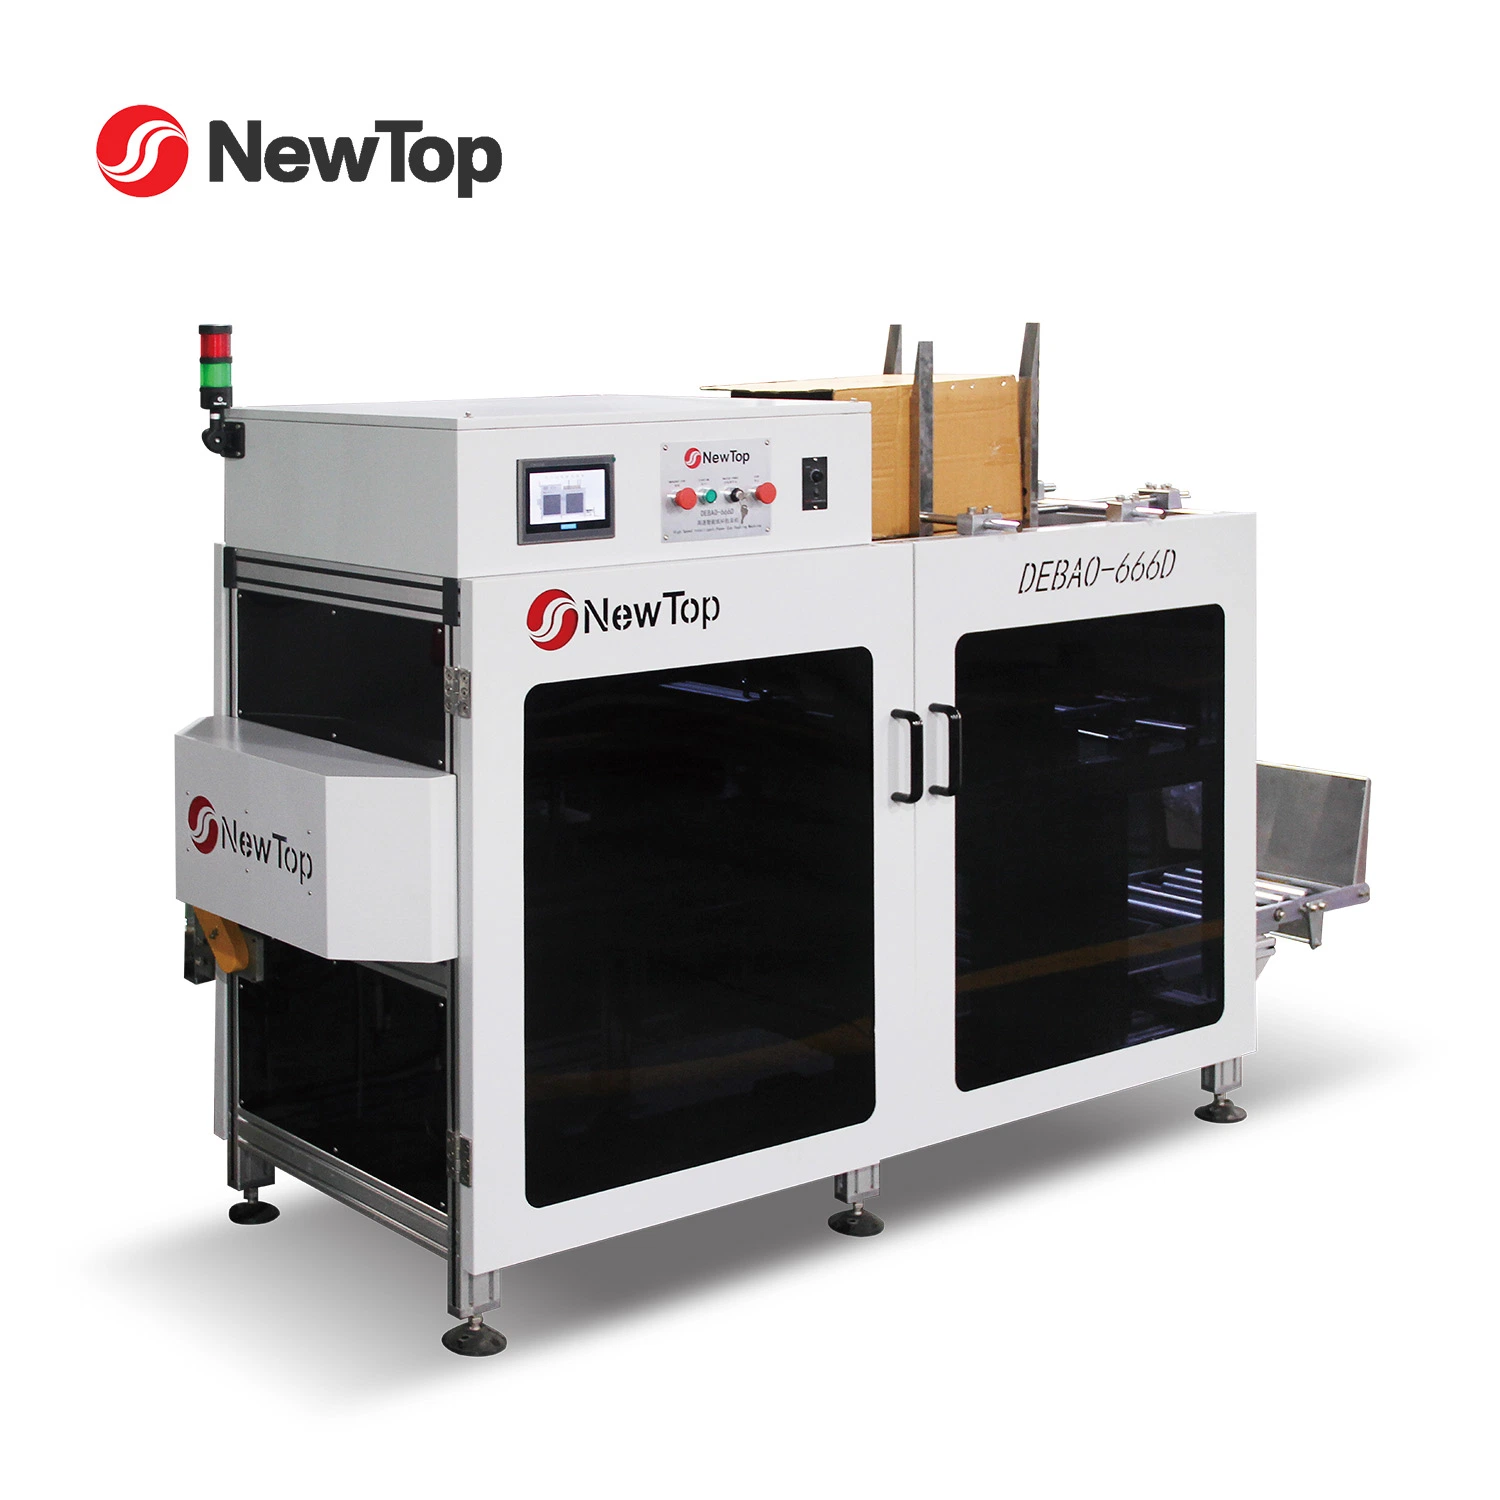 La Junta de cartón personalizadas Newtop Debao Case-Packing / nuevo vaso de papel de la máquina de revestimiento